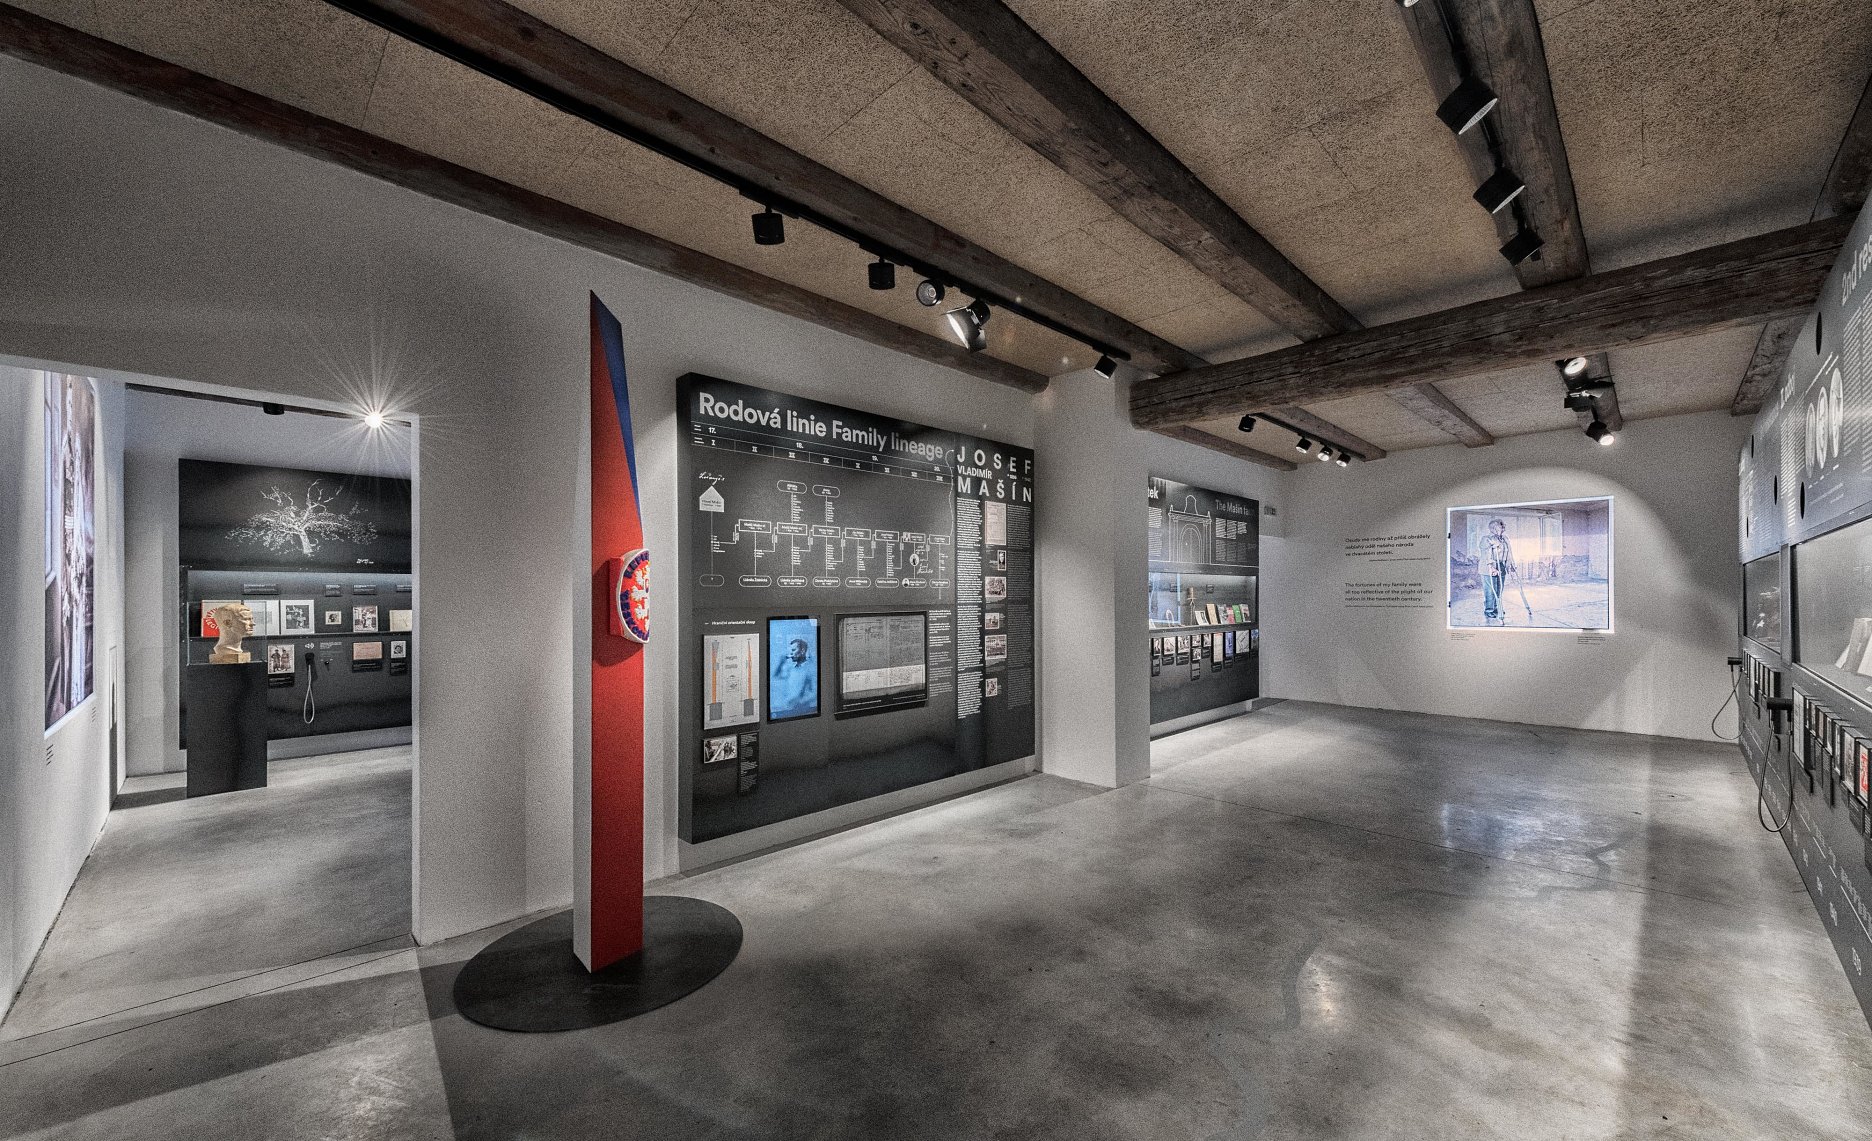 Komorné priestory stálej expozície, pod pôvodným trámovým stropom vozovej kôlne, využívajú na inštaláciu všetky steny, výplne otvorov aj betónovú podlahu